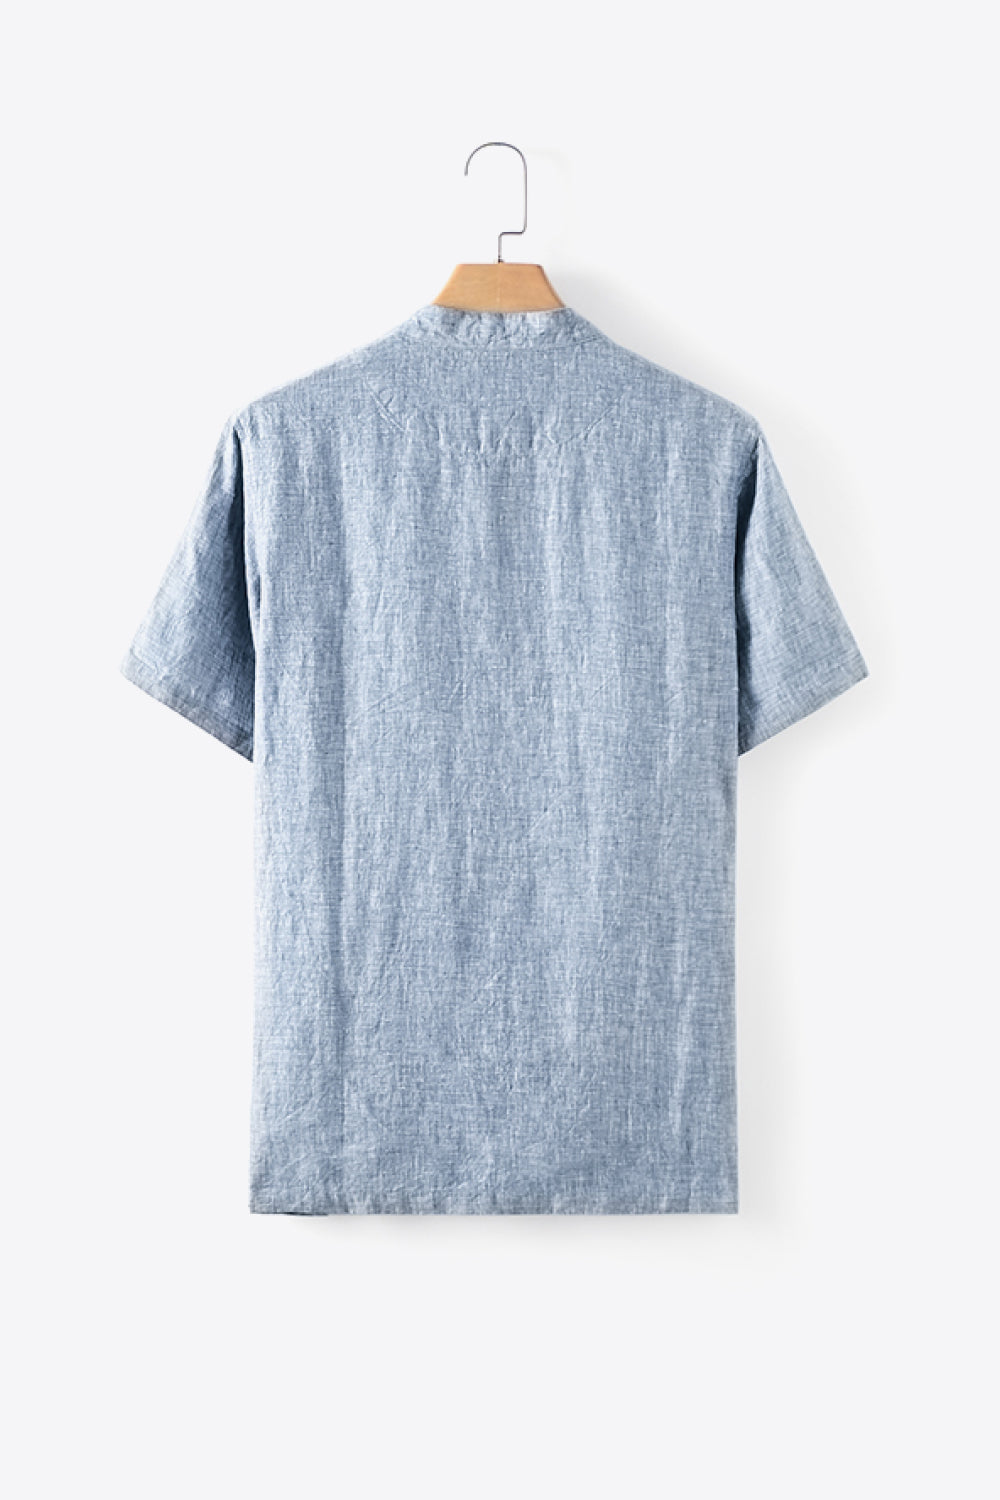 Blueberry Melody Button Up 100% Linen Men's Shirt